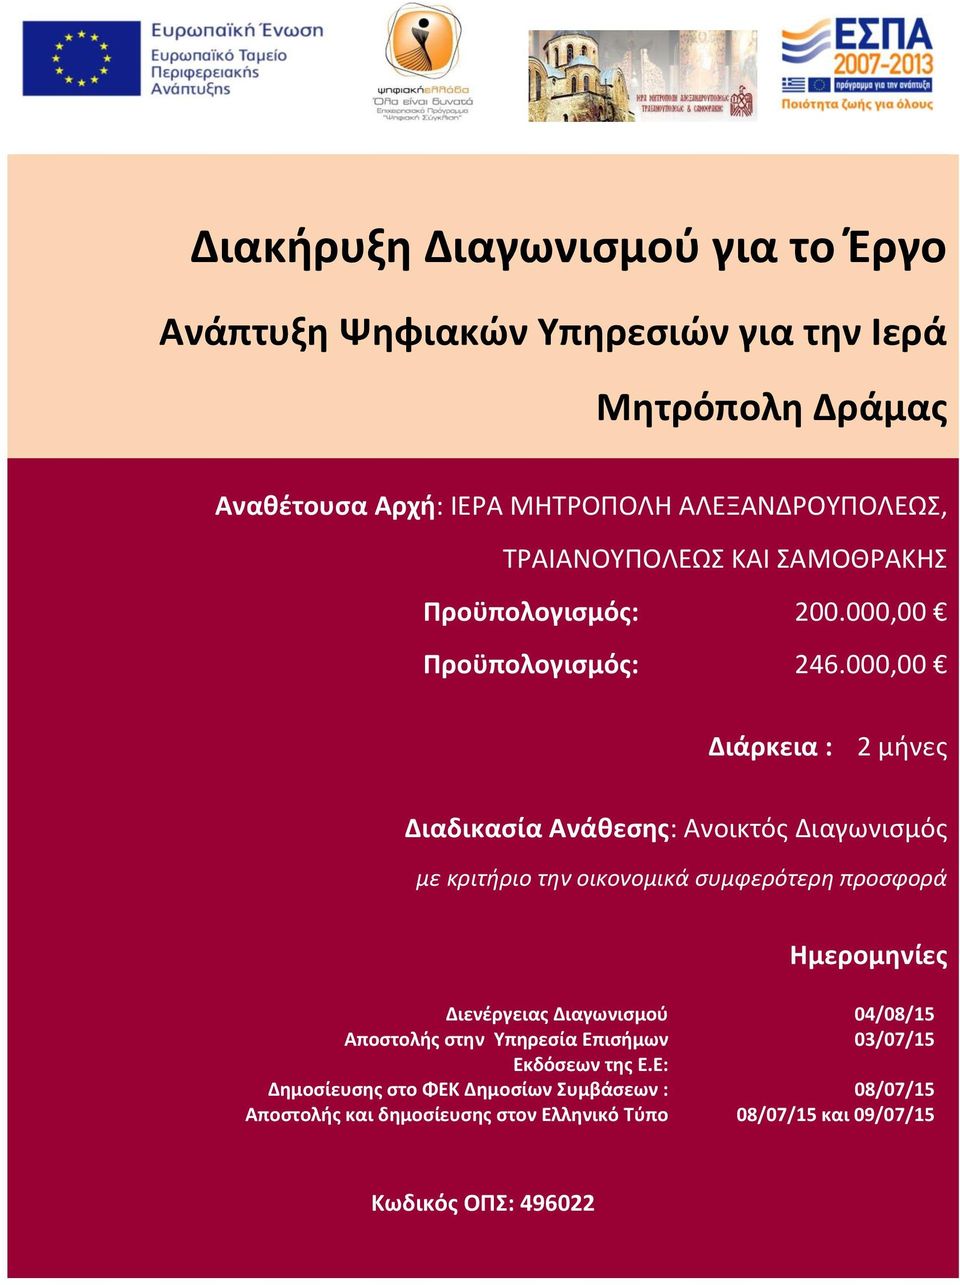 000,00 Διάρκεια : 2 μήνες Διαδικασία Ανάθεσης: Ανοικτός Διαγωνισμός με κριτήριο την οικονομικά συμφερότερη προσφορά Ημερομηνίες Διενέργειας